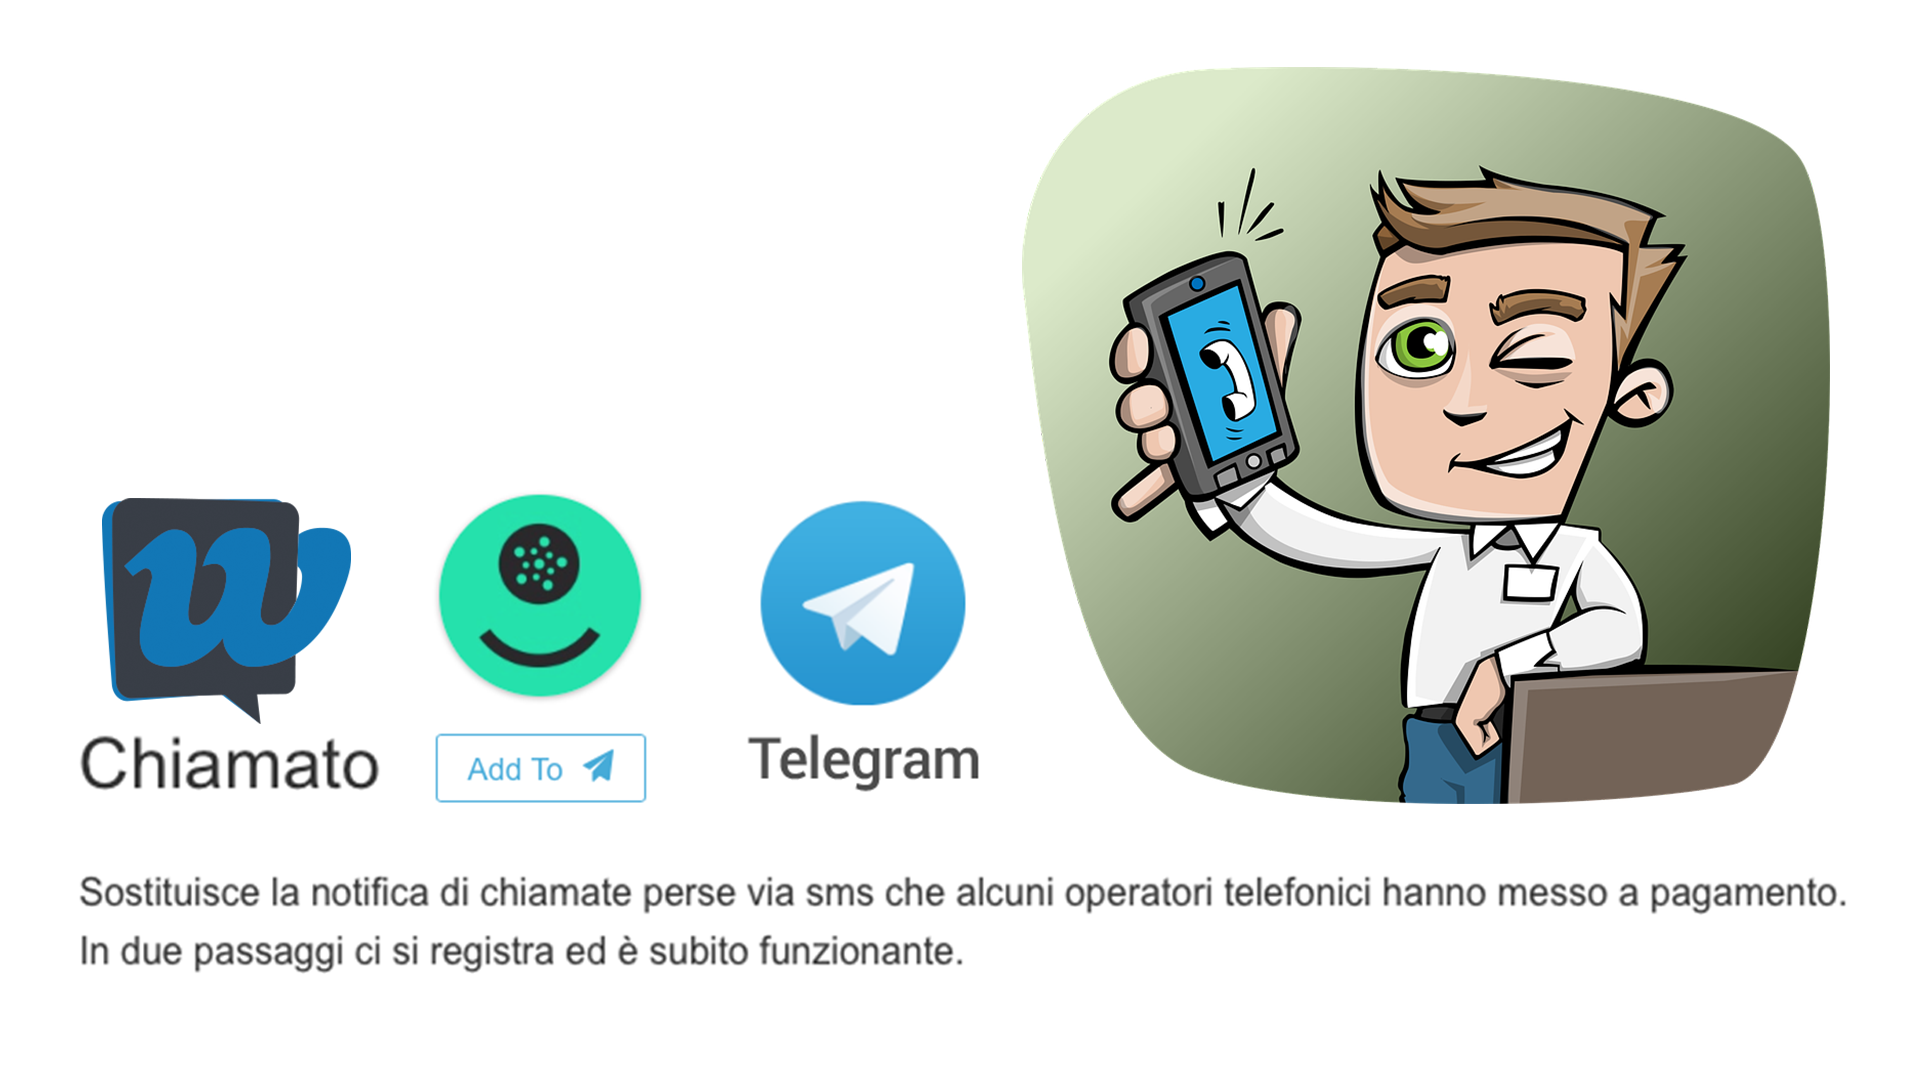 Il servizio” ti ho cercato” gratis con un bot Telegram